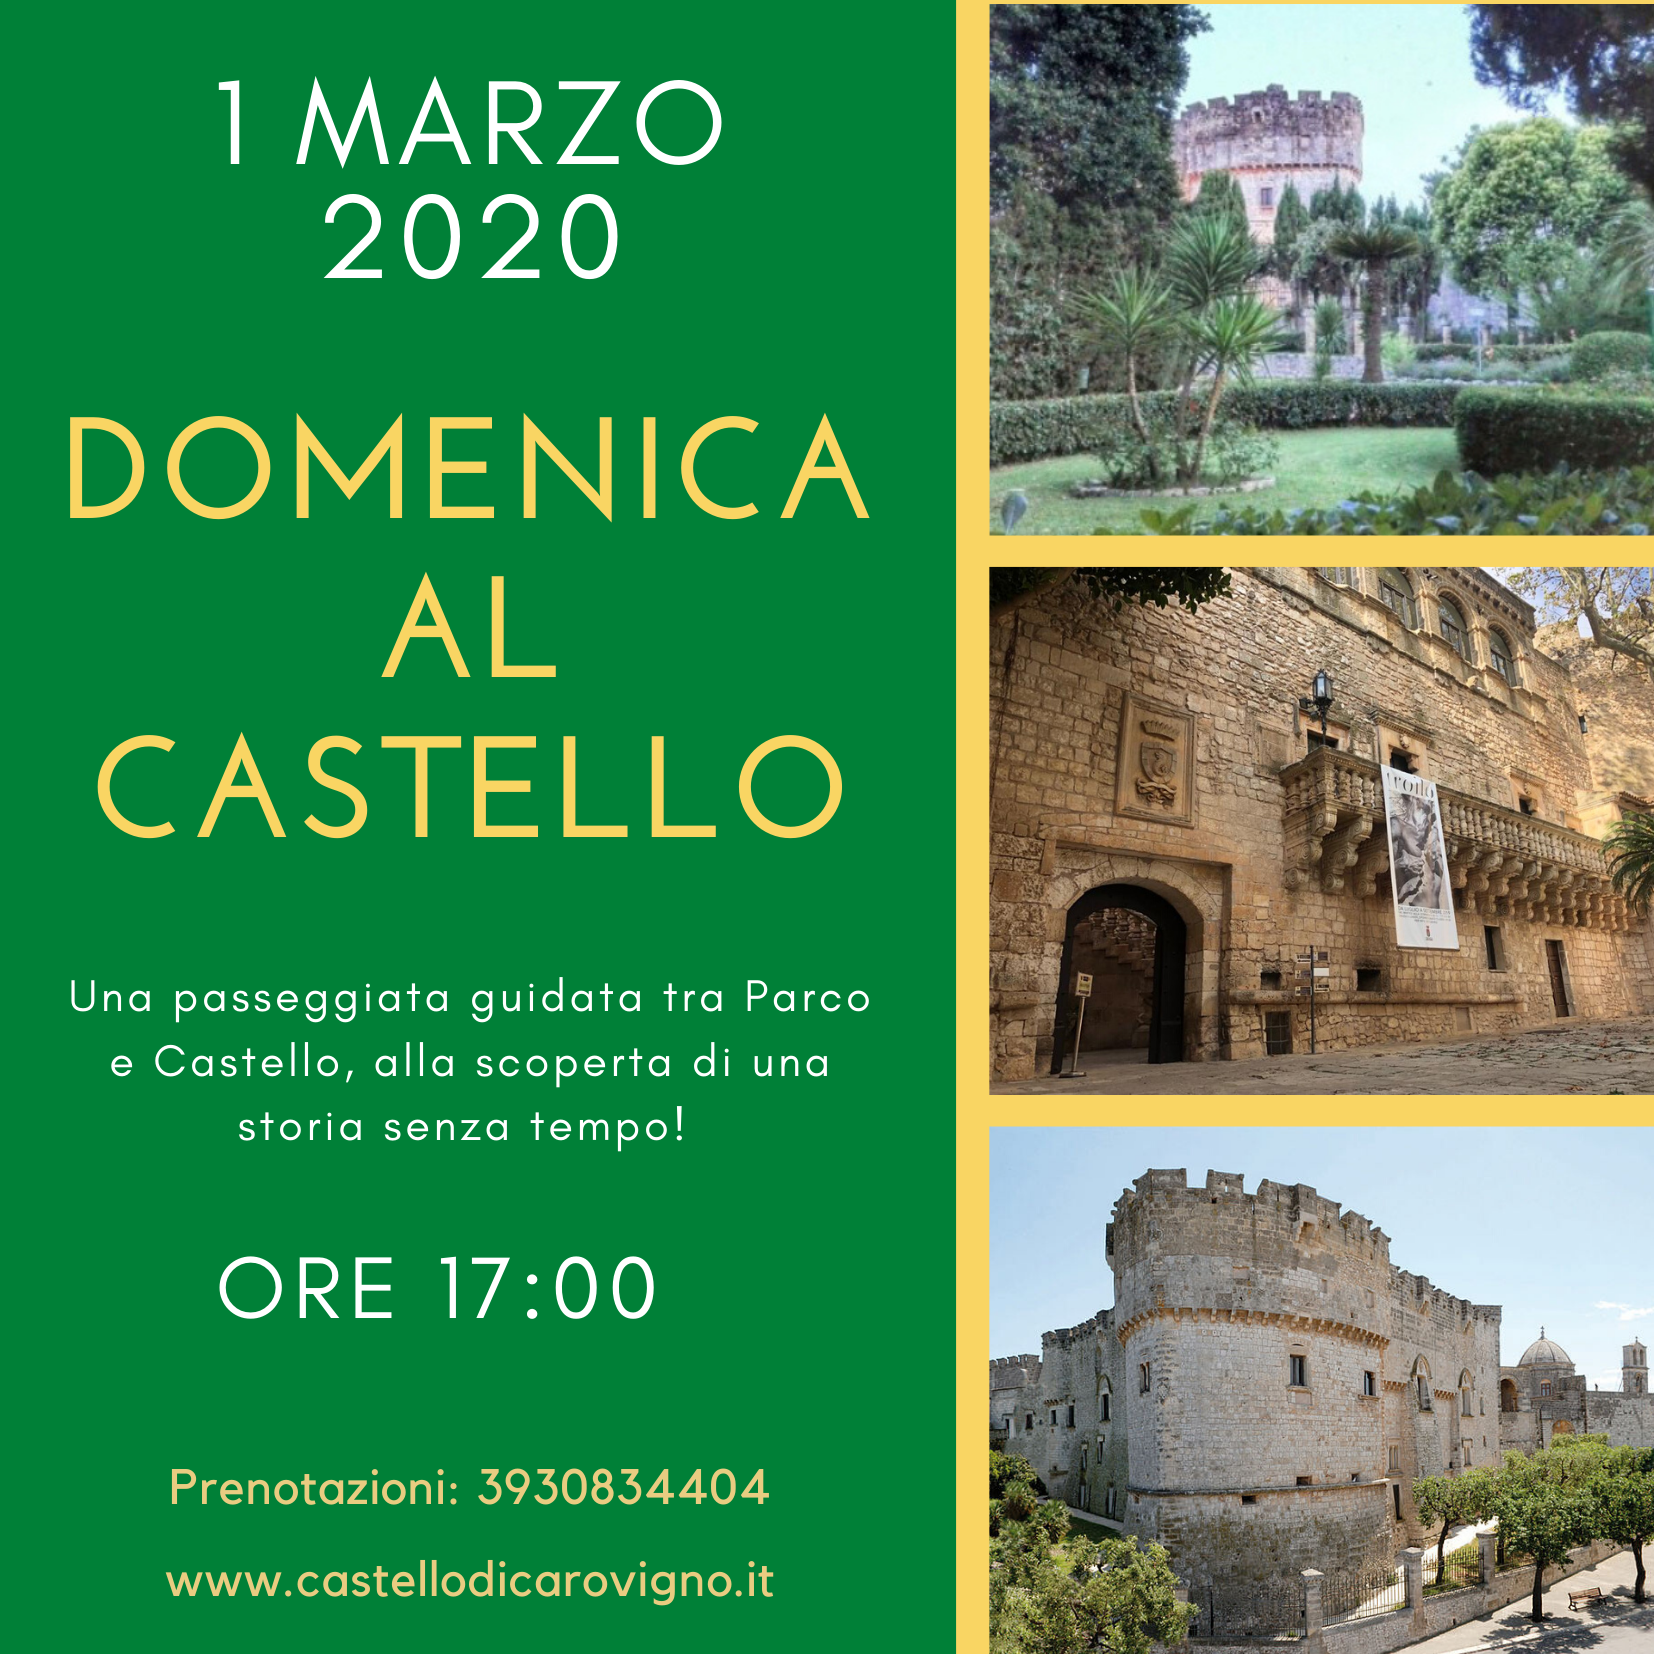 L’1 marzo visita speciale al Castello Dentice di Frasso: inclusa una passeggiata al Parco della Contessa